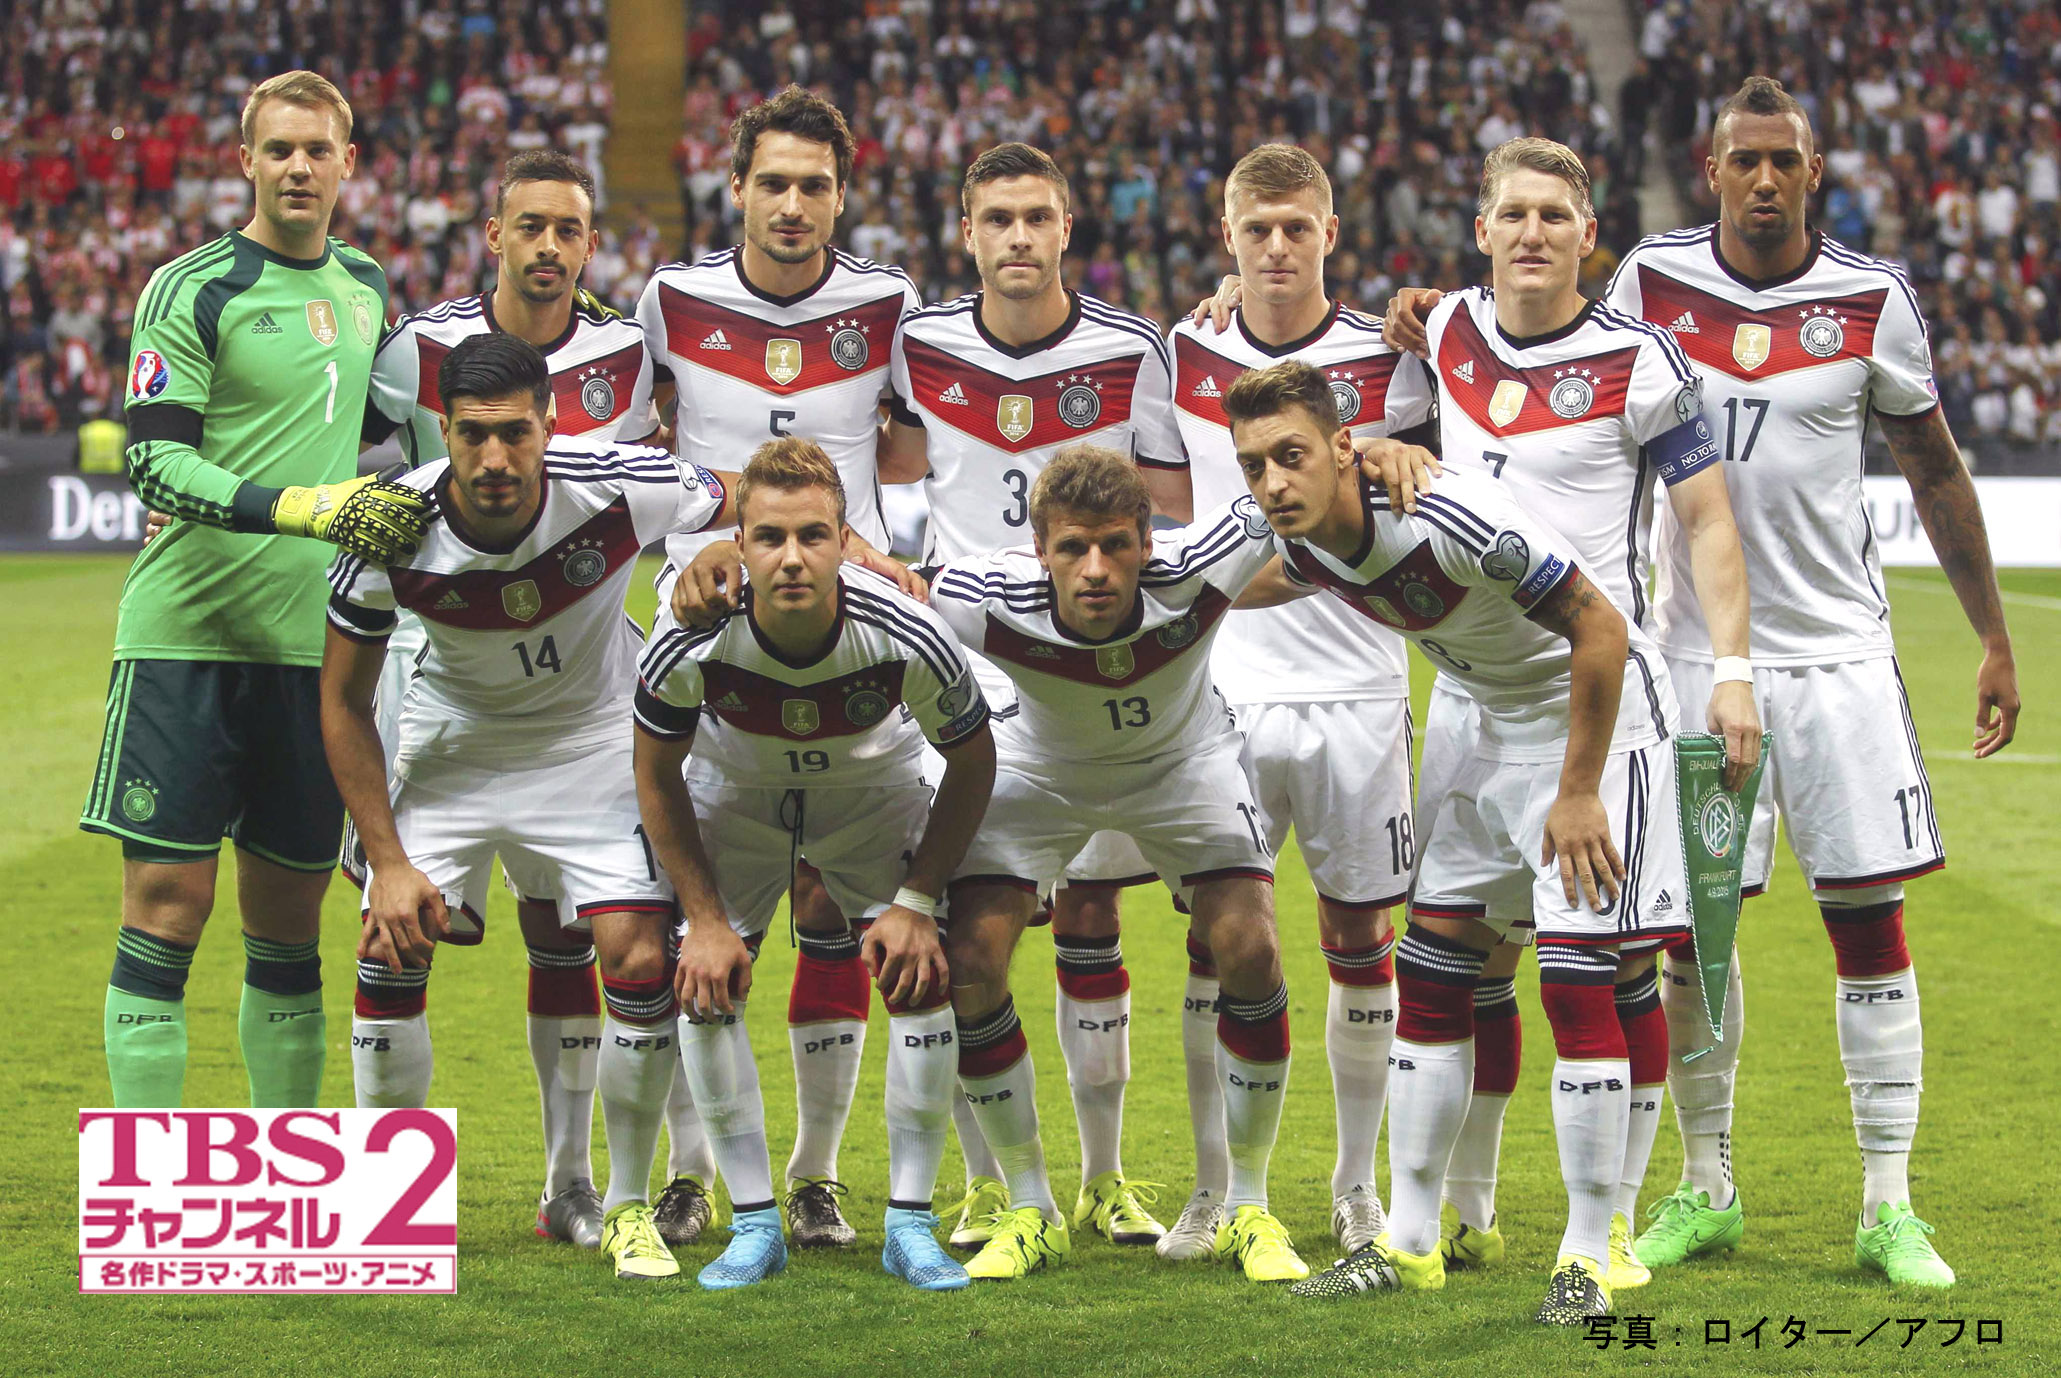 サッカードイツ代表の国際試合2試合をcs放送 Tbsチャンネル2 で独占生中継 11 14 土 フランスvsドイツ 11 18 水 ドイツvsオランダ 株式会社tbsテレビのプレスリリース